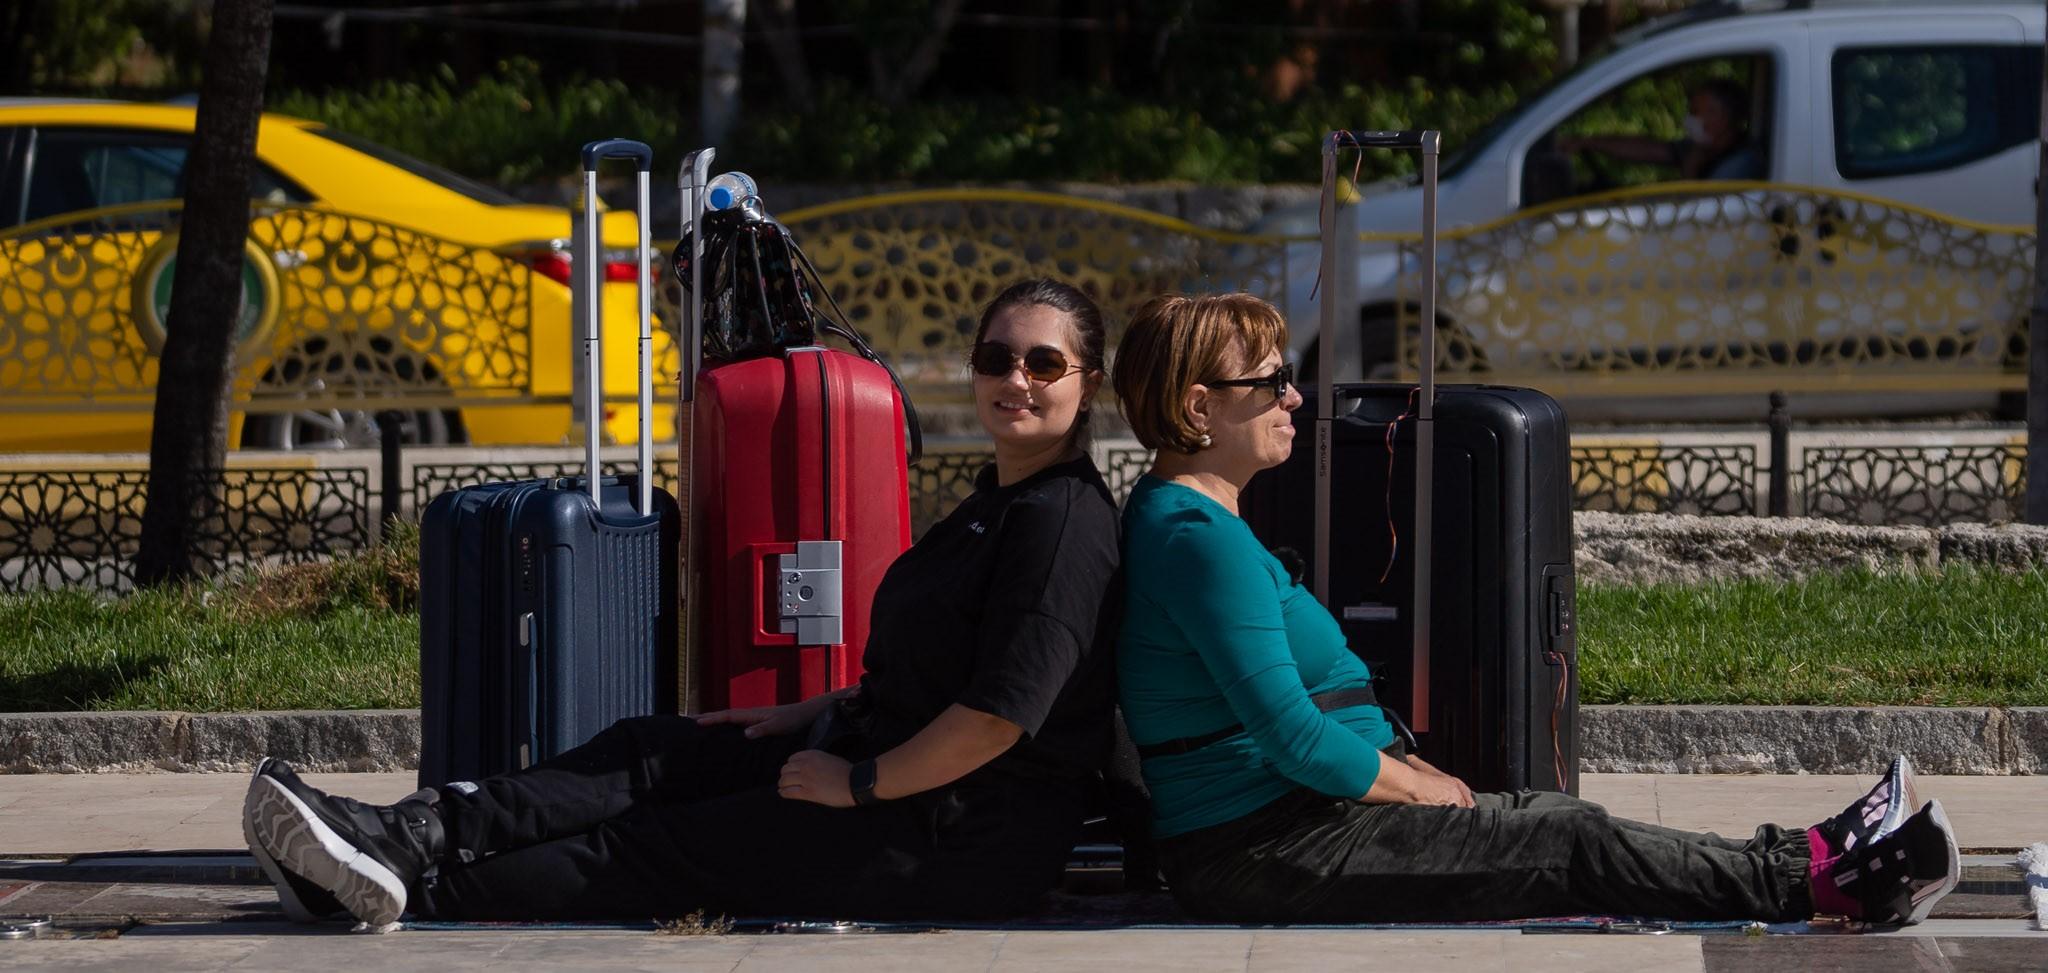 Adriana Trandafir și Maria Speranța la Asia Express, stau pe jos cu bagajele lângă ele